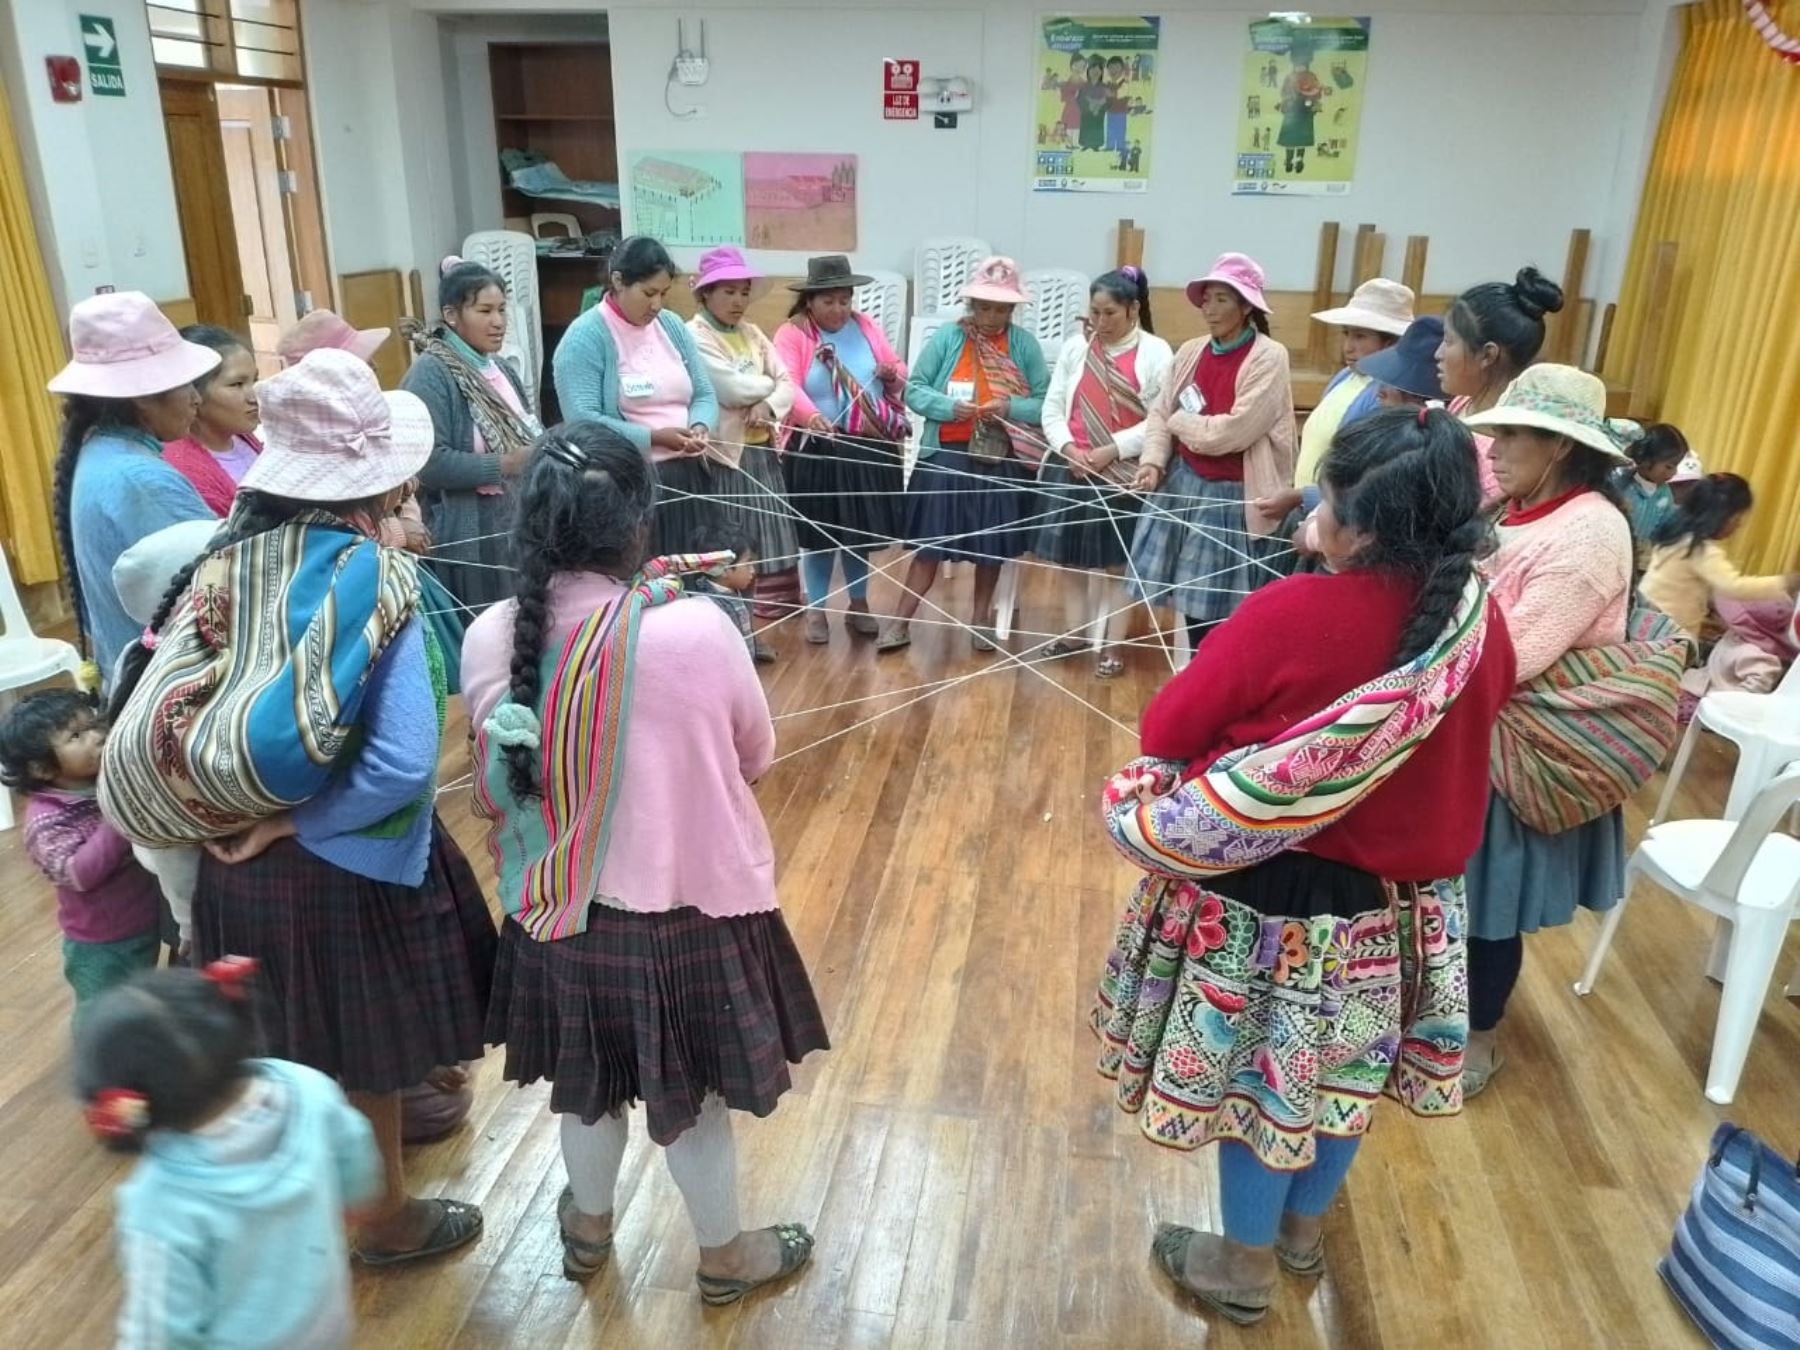 Especialistas del Ministerio de Trabajo capacitan en autoempleo a personas en situación de pobreza y vulnerabilidad de las regiones Apurímac, Cusco y Tacna.